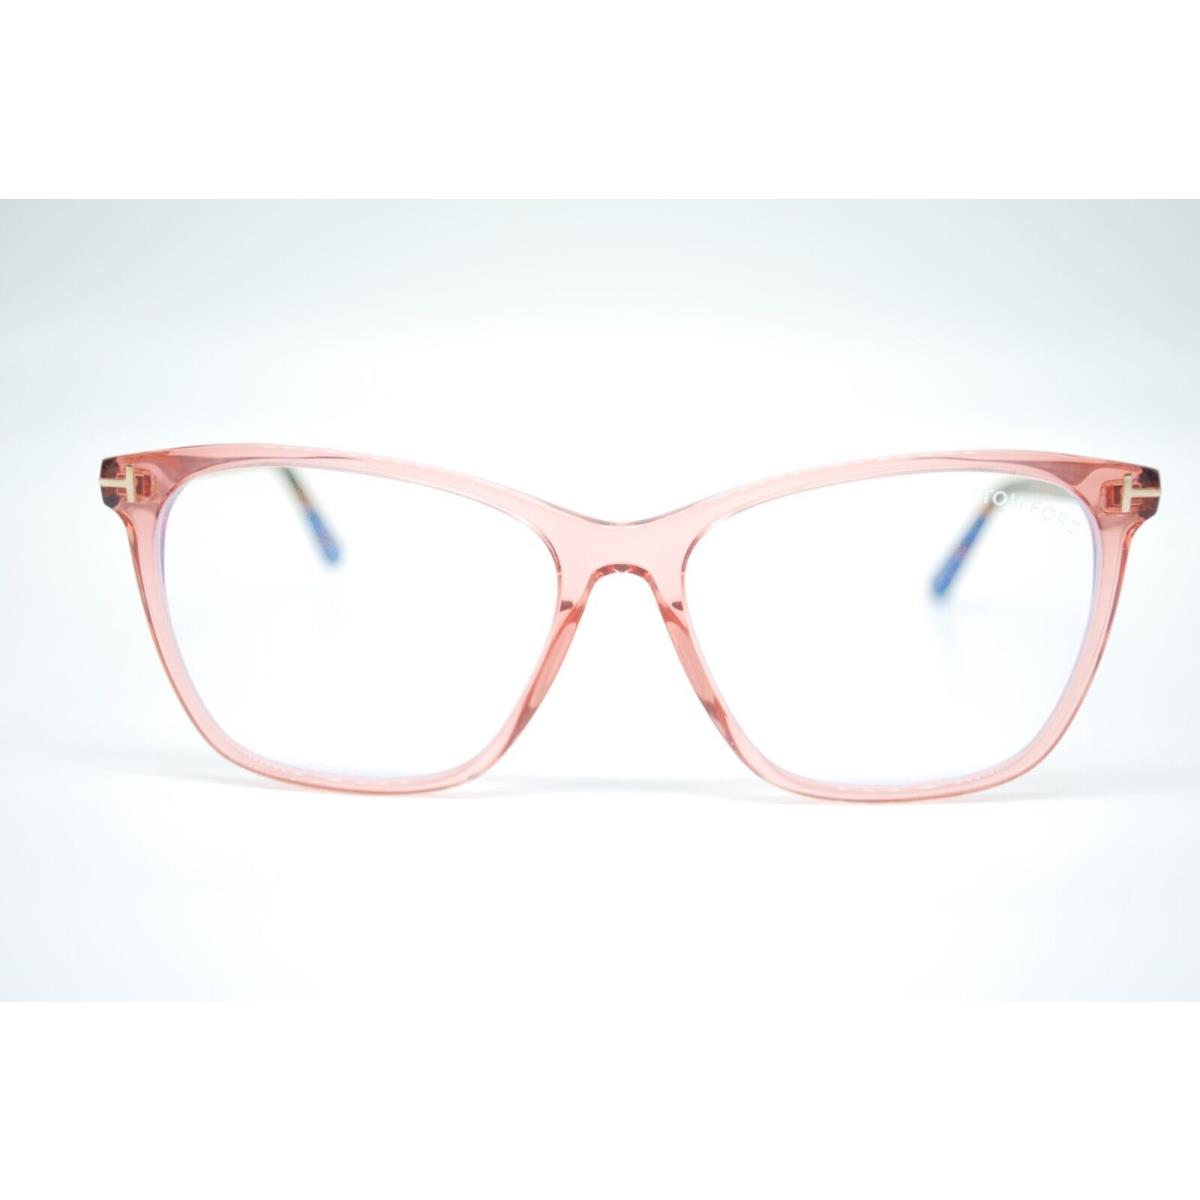 Tom Ford eyeglasses  - CORAL PINK Frame 1